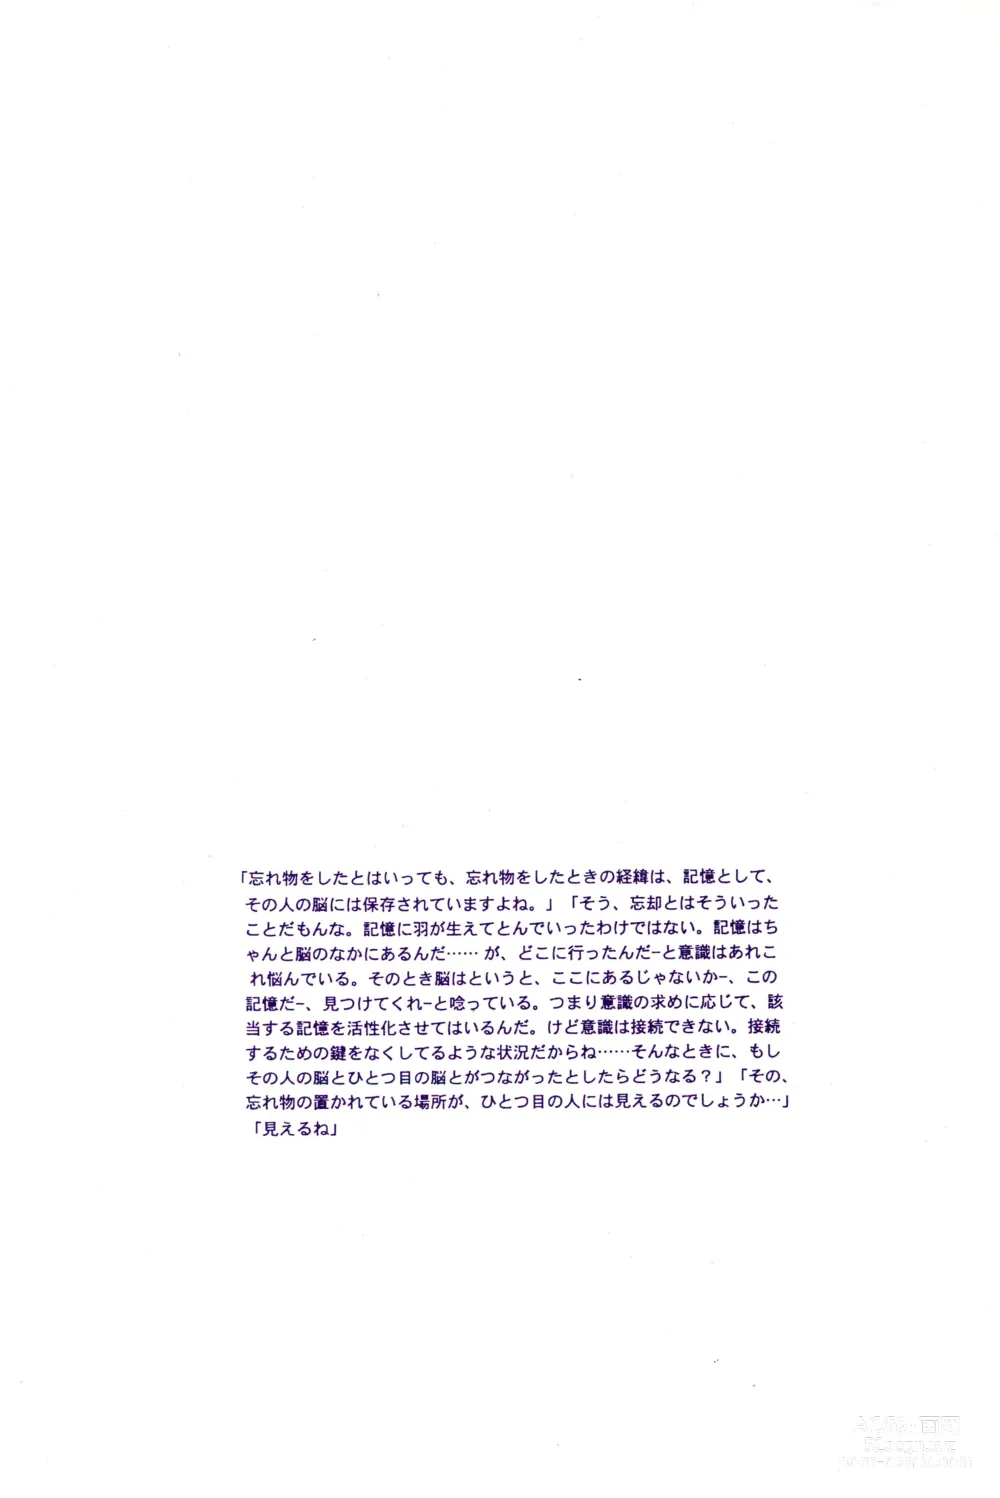 Page 21 of doujinshi Kowareta Mono no Honto no Katachi